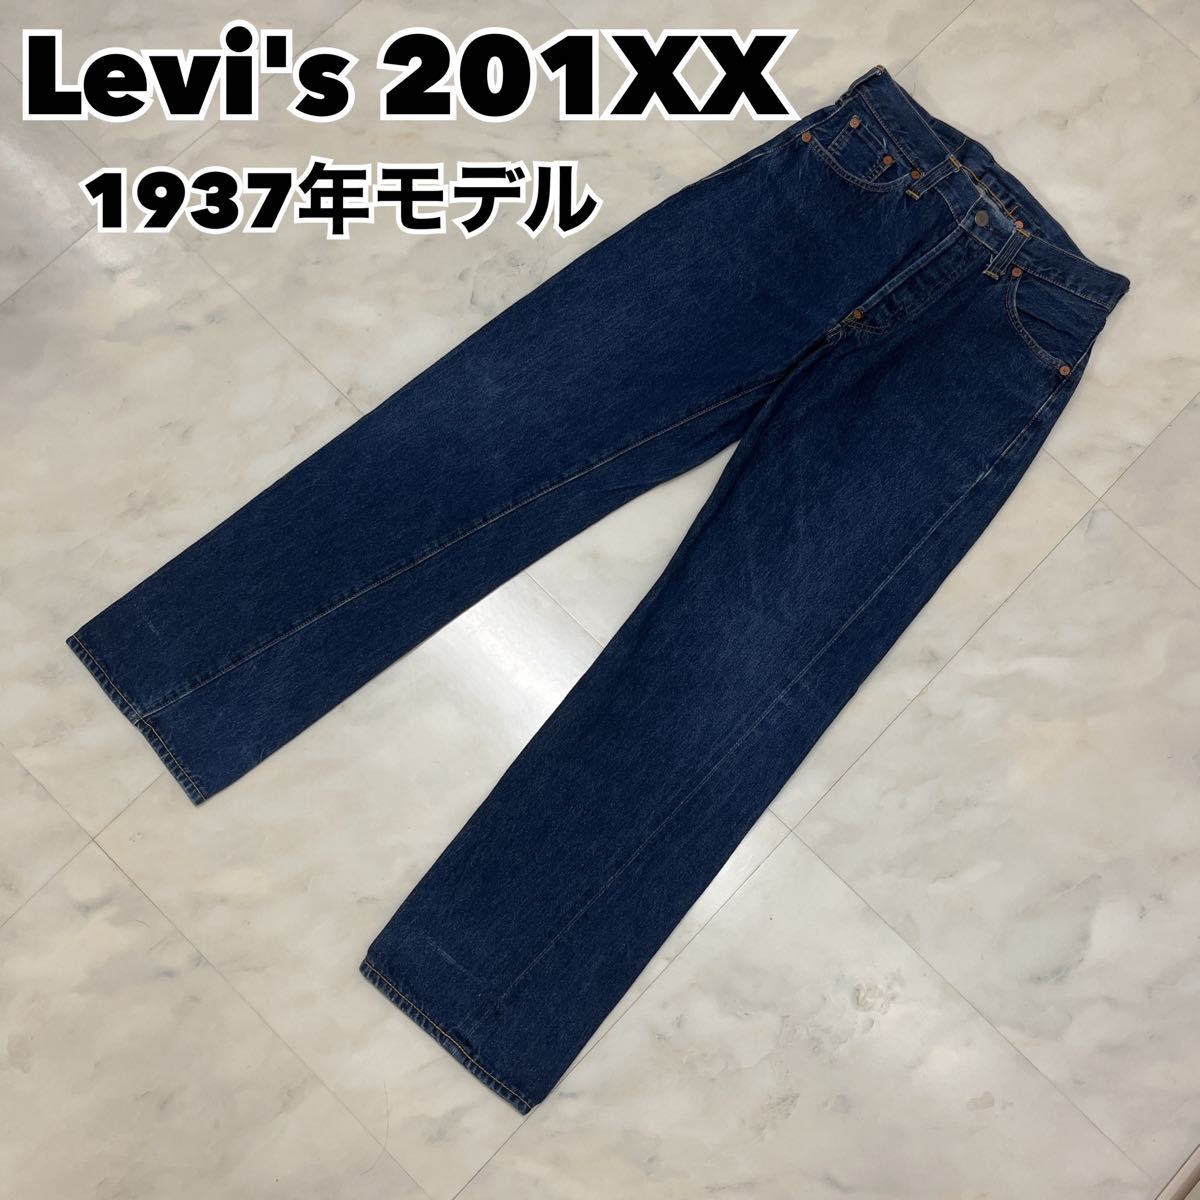 USA製】 Levi's リーバイス 201XX 1937モデル 復刻 メンズファッション